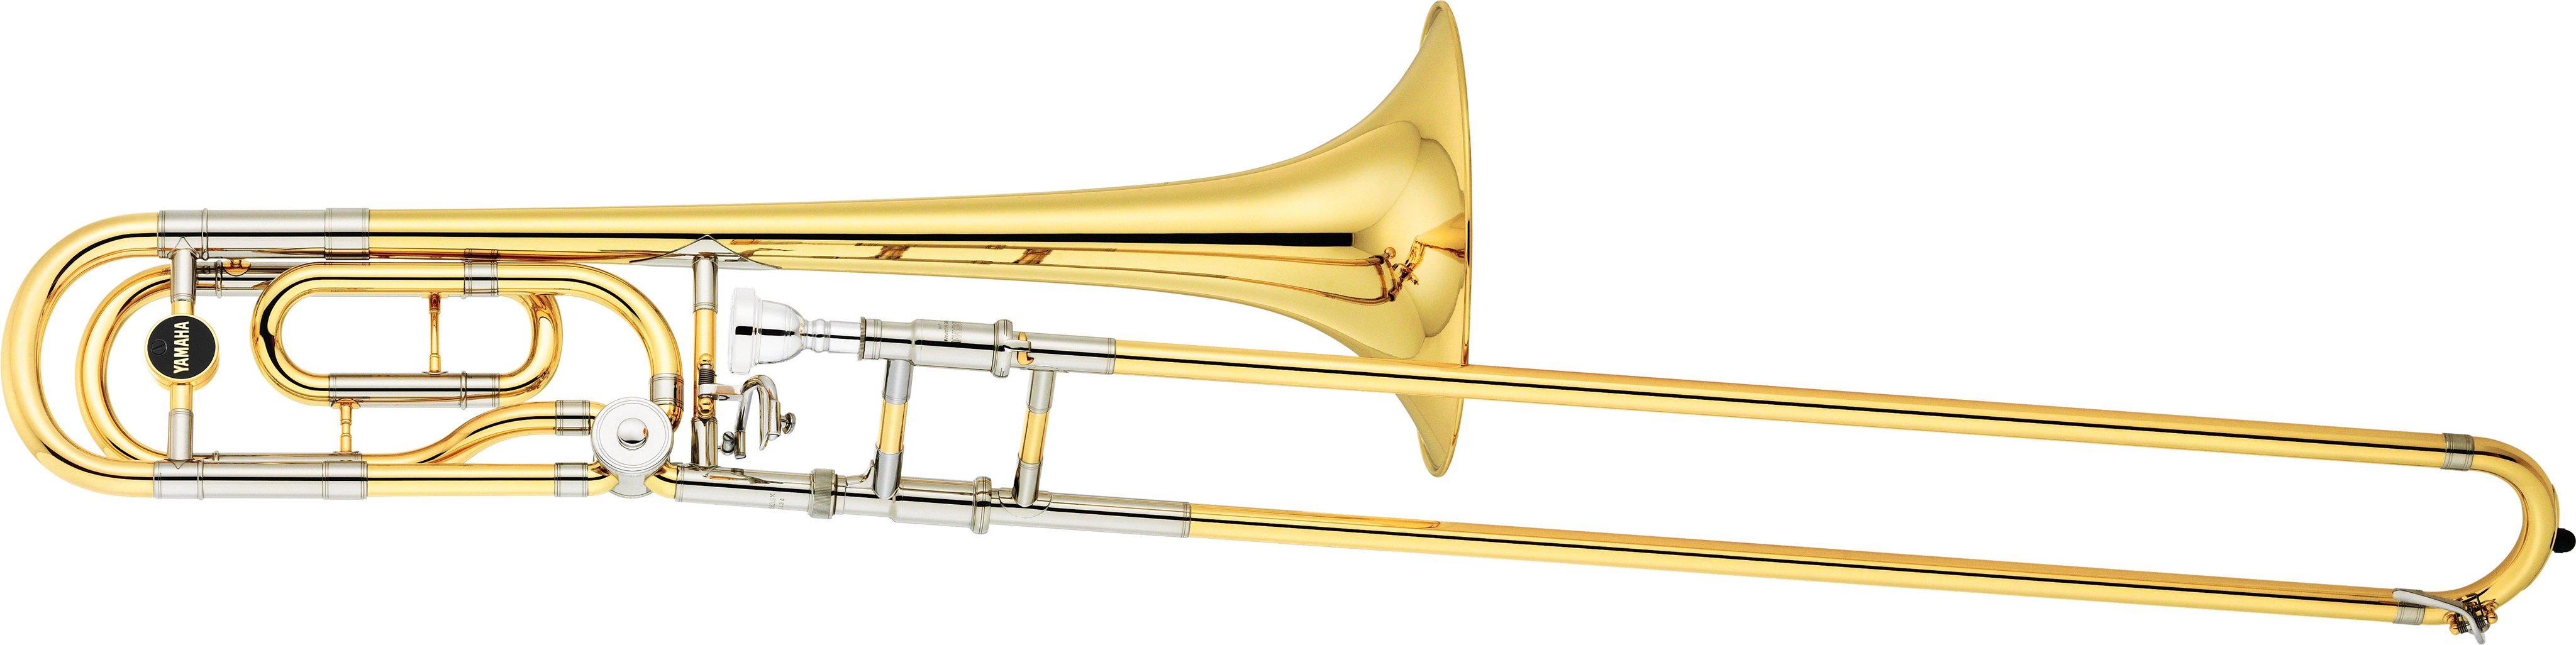 YSL-882 - Overview - Trombones - Brass & Woodwinds - Musical 